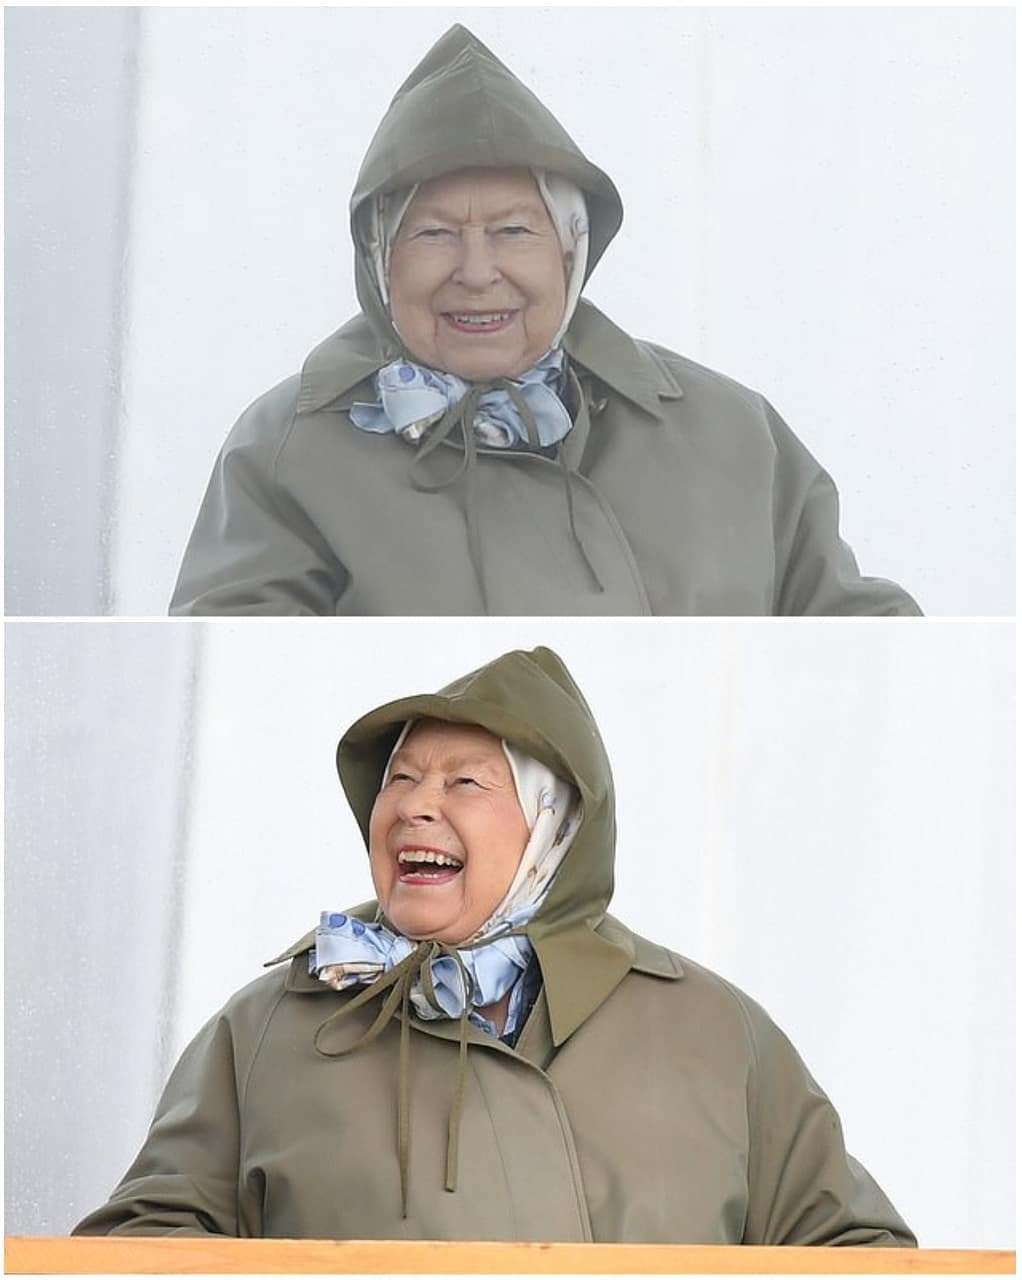 Королева Єлизавета ІІ вболівала на скачках і її вирази обличчя заслуговують 'Оскара' - фото 432541